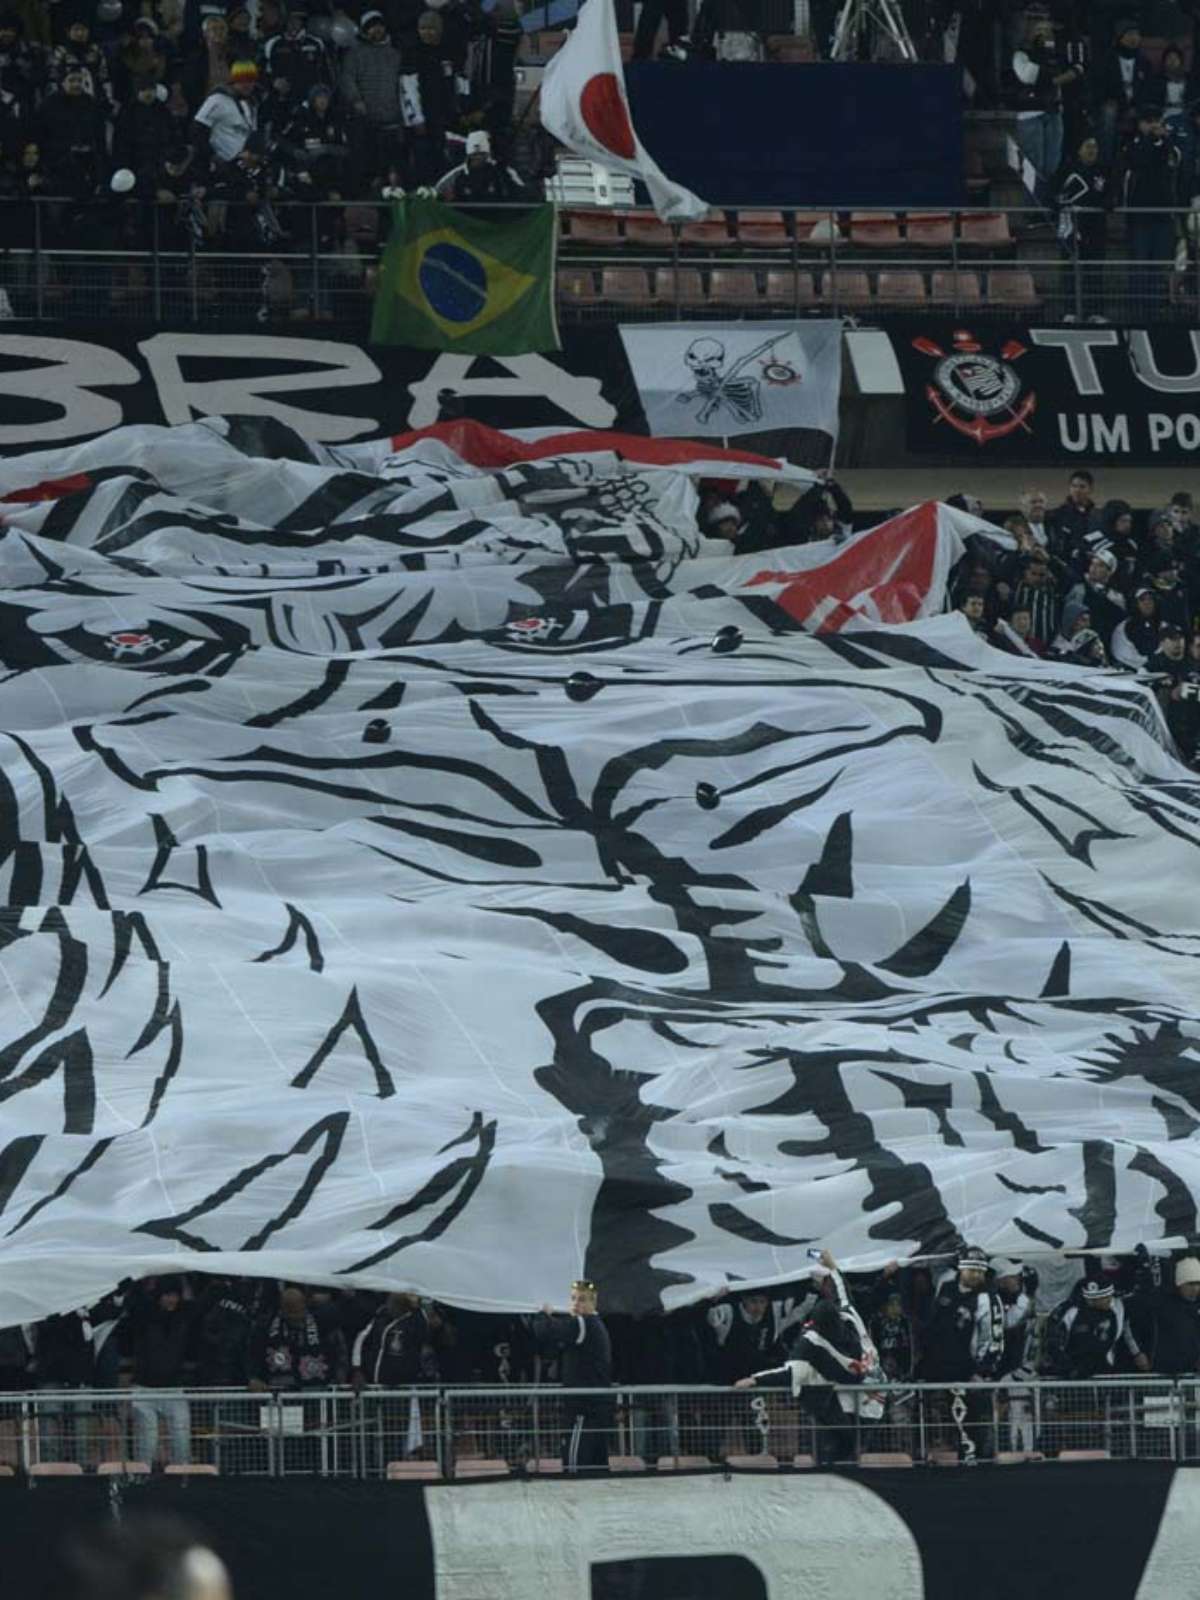 Fifa lembra título do Corinthians em edição inaugural do Mundial